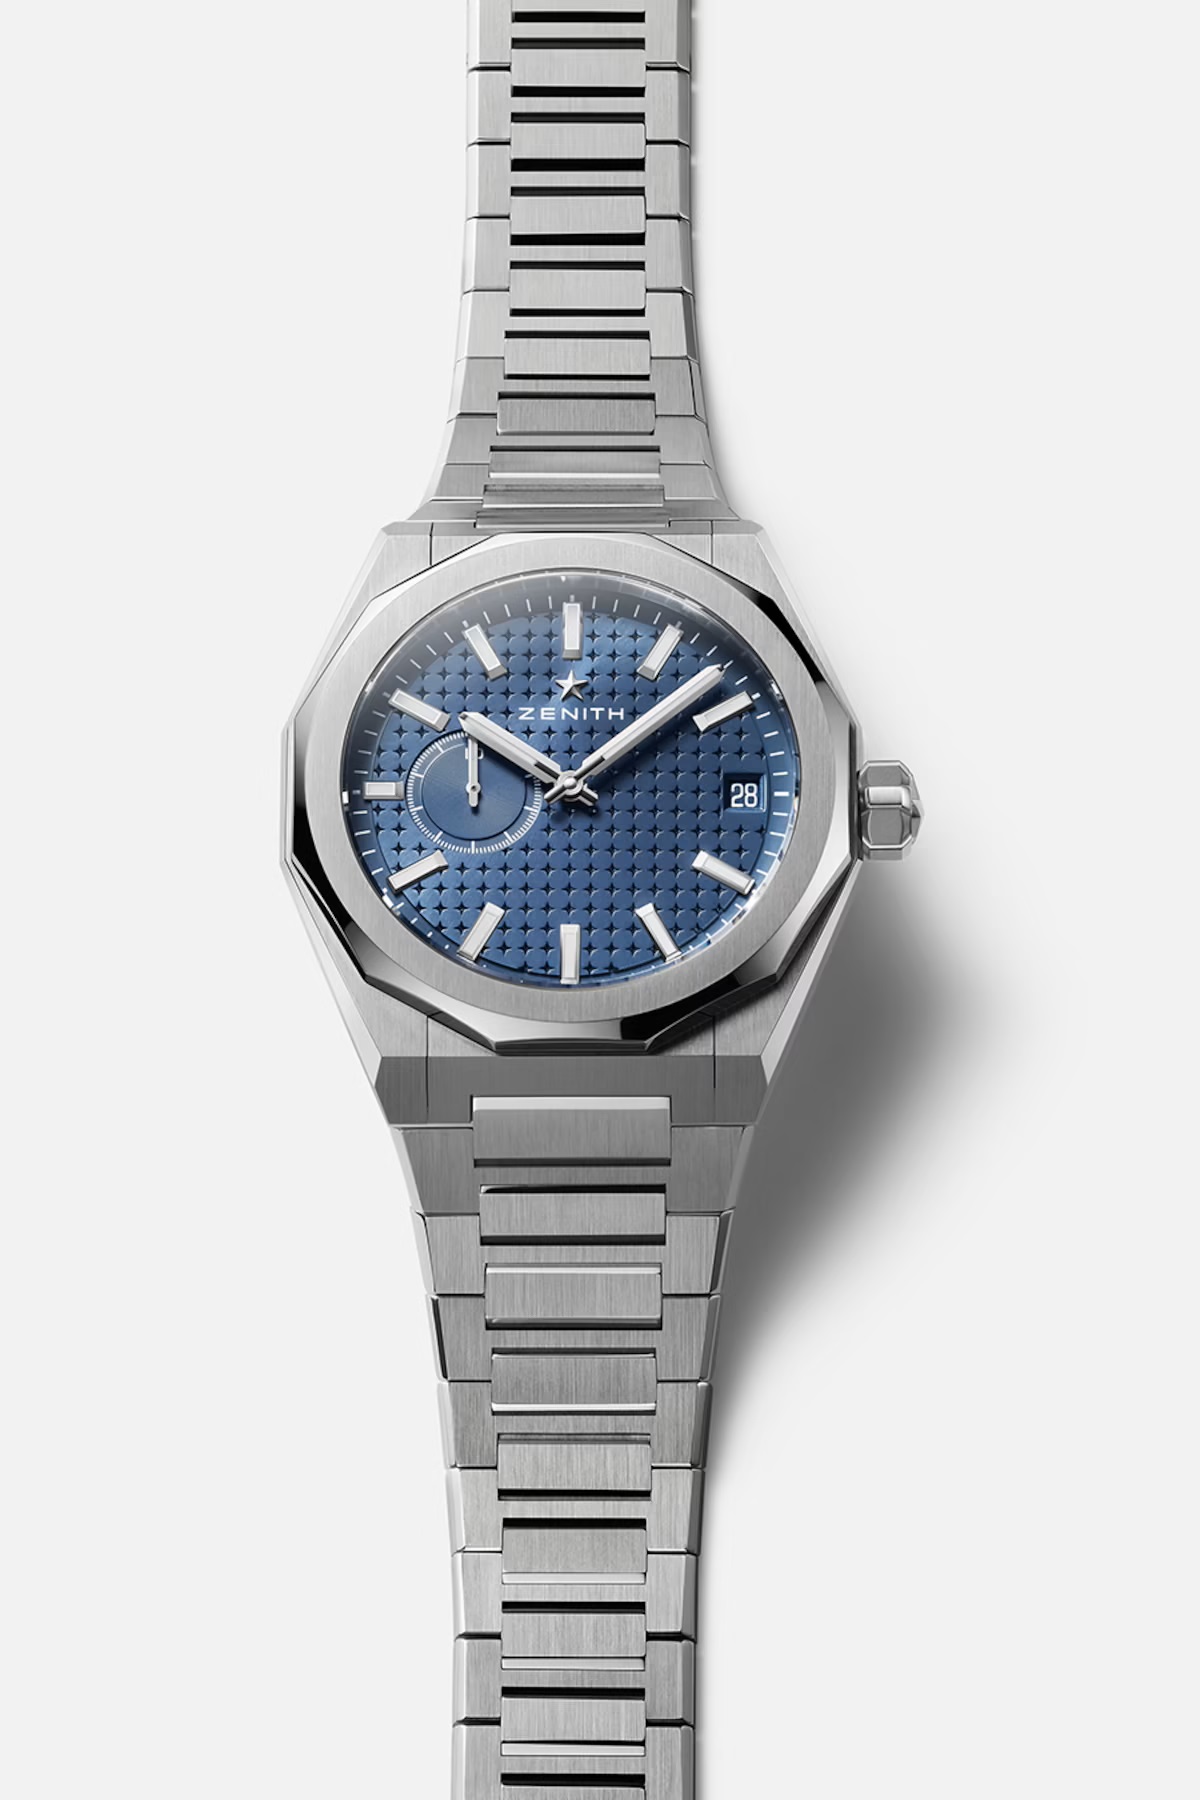 Men's watch / unisex  ZENITH, Defy Skyline / 41mm, SKU: 03.9300.3620/51.I001 | watchphilosophy.co.uk